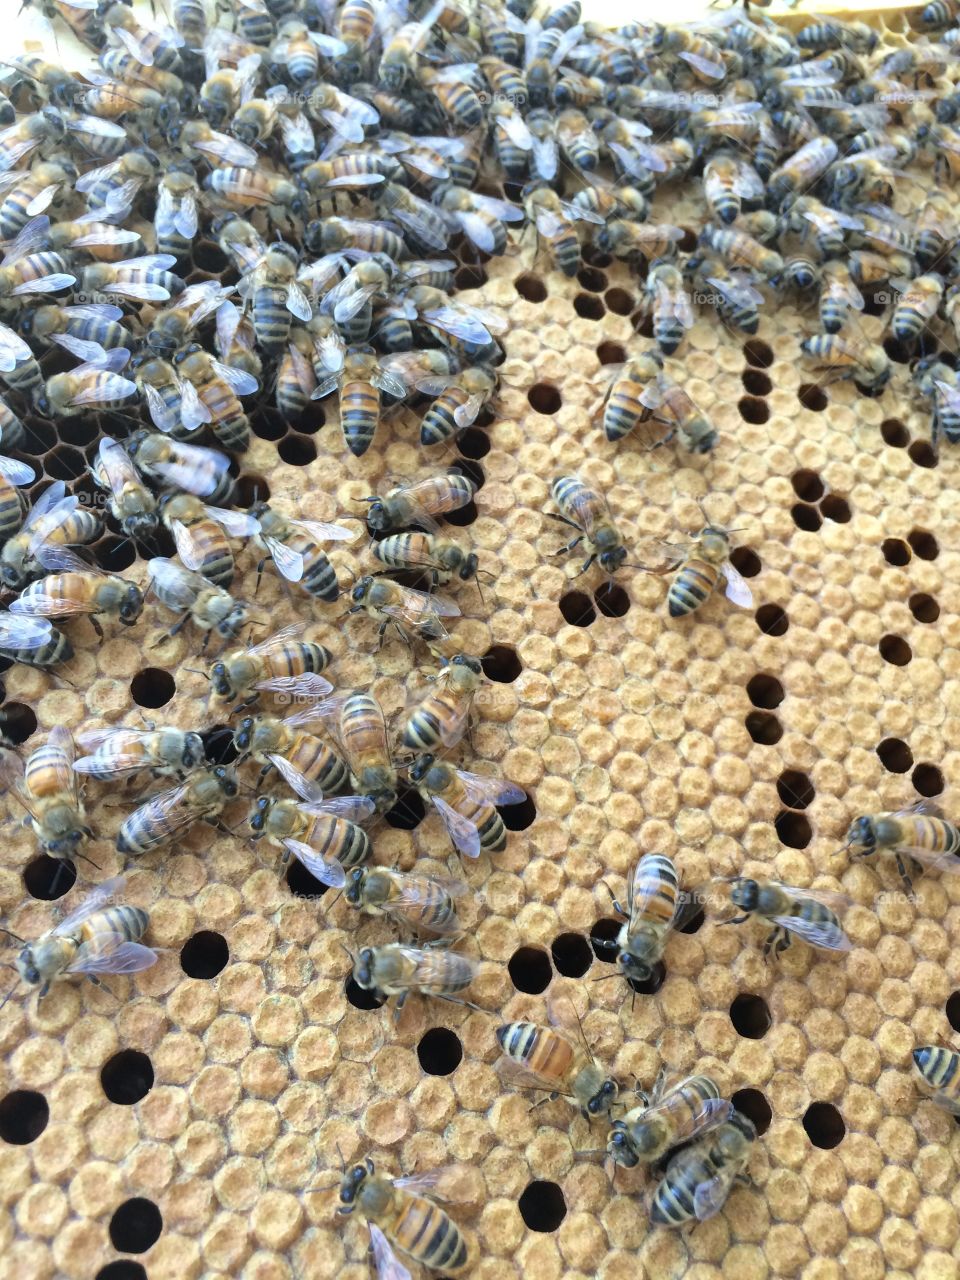 Honeybees at work